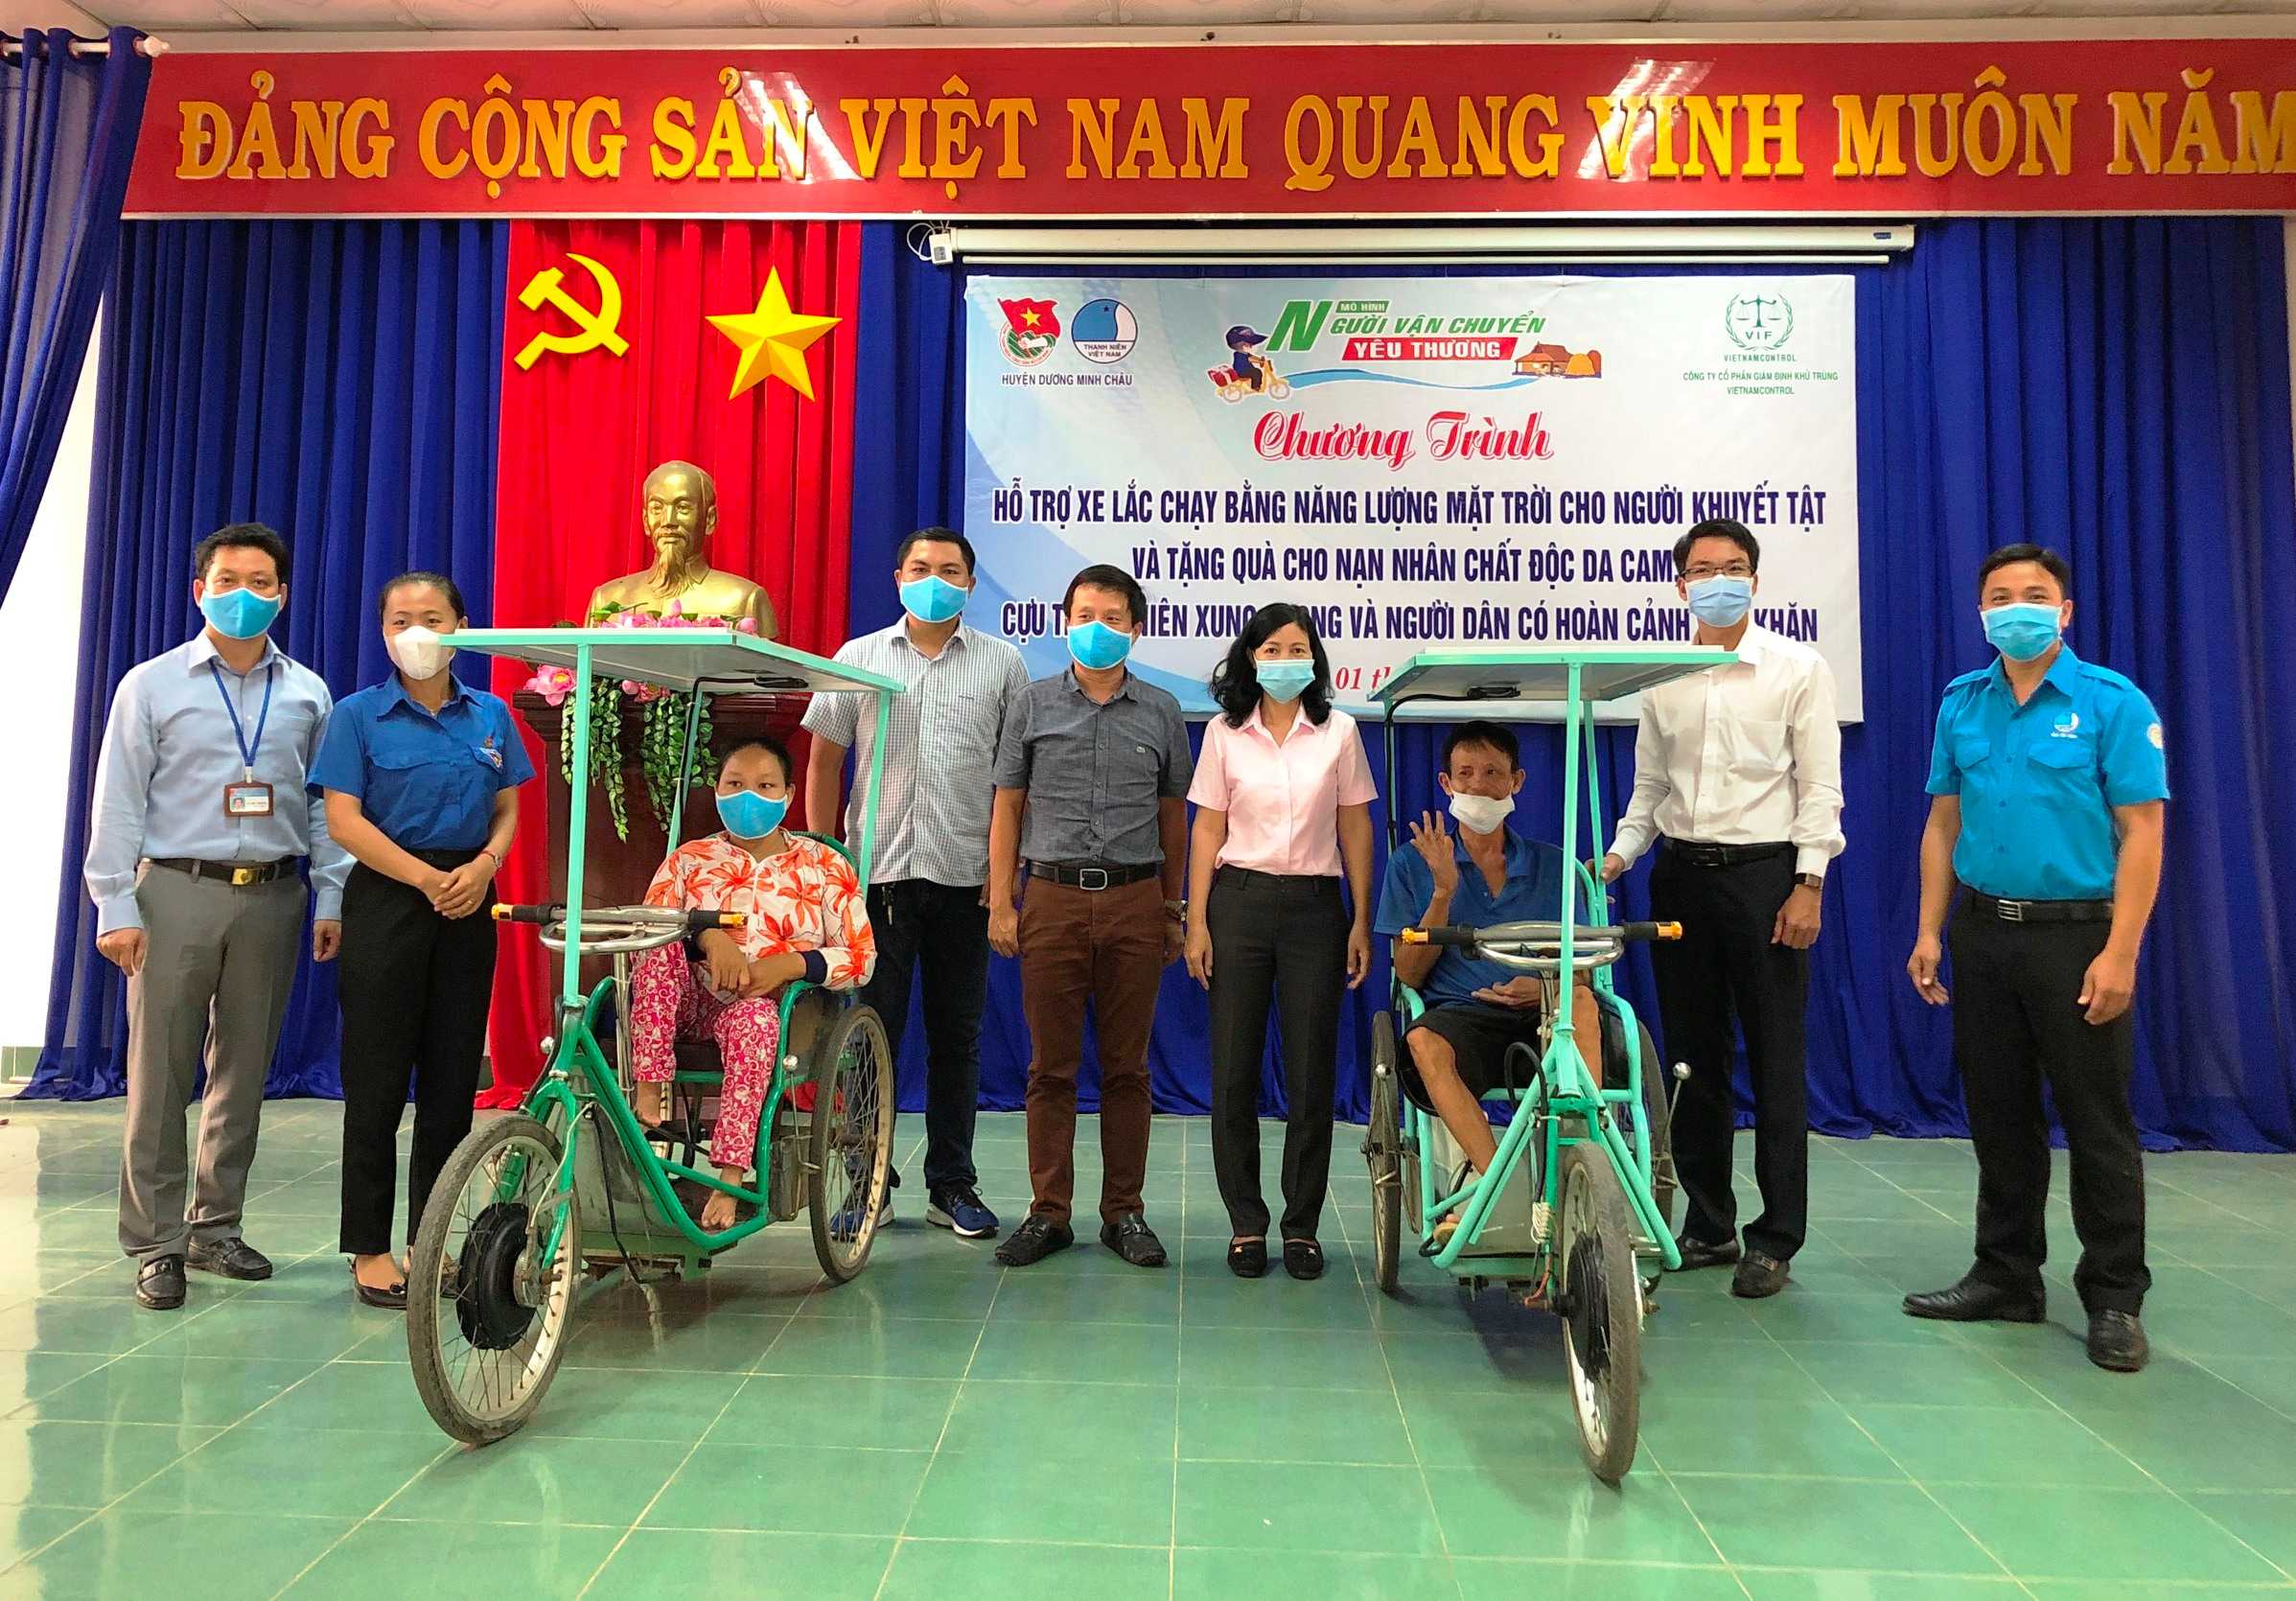 Huyện đoàn Dương Minh Châu: Hỗ trợ xe lắc và tặng quà cho người dân